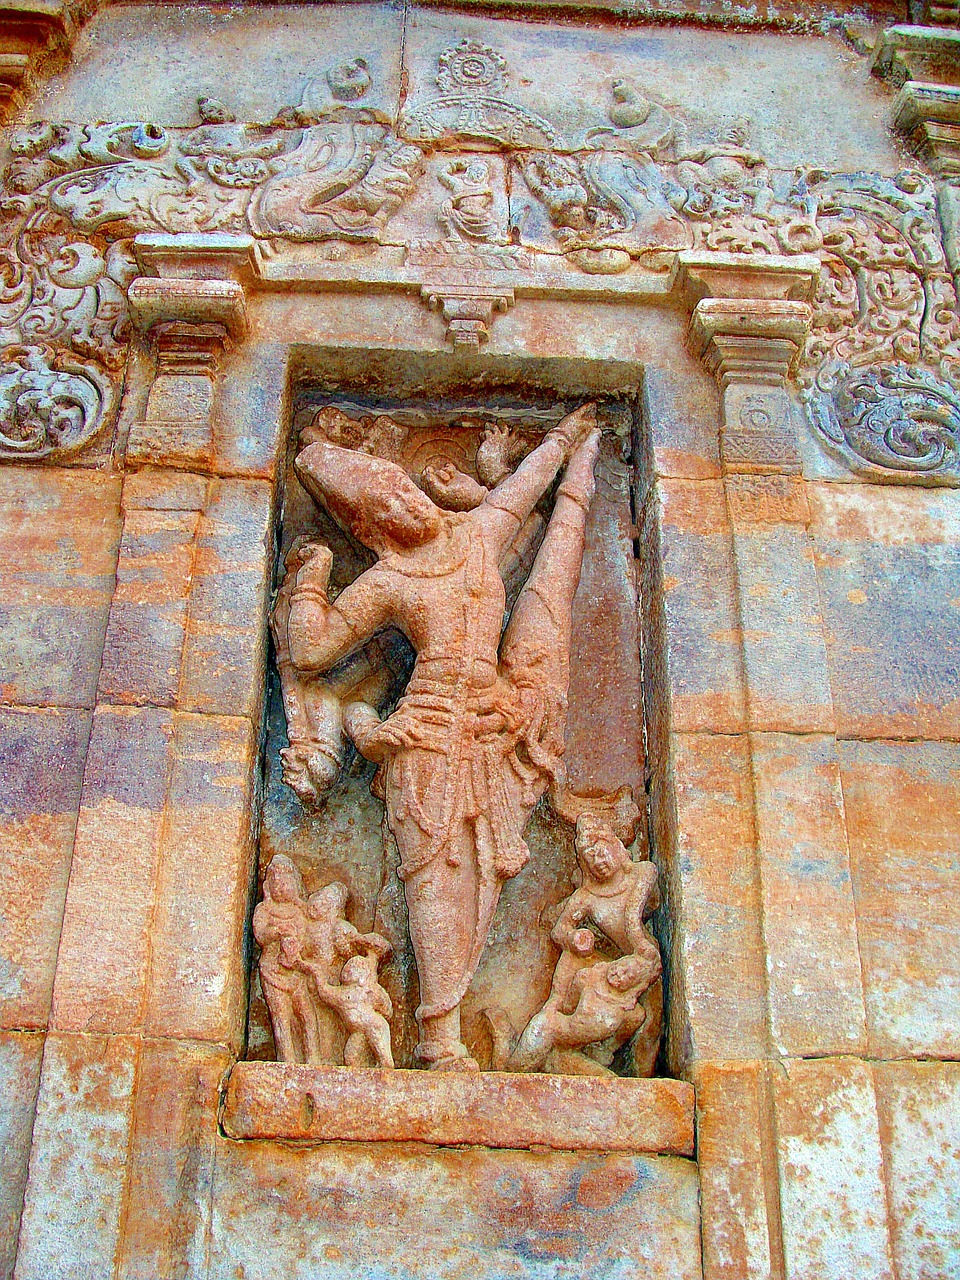 pattadakal unesco wall carvings free photo